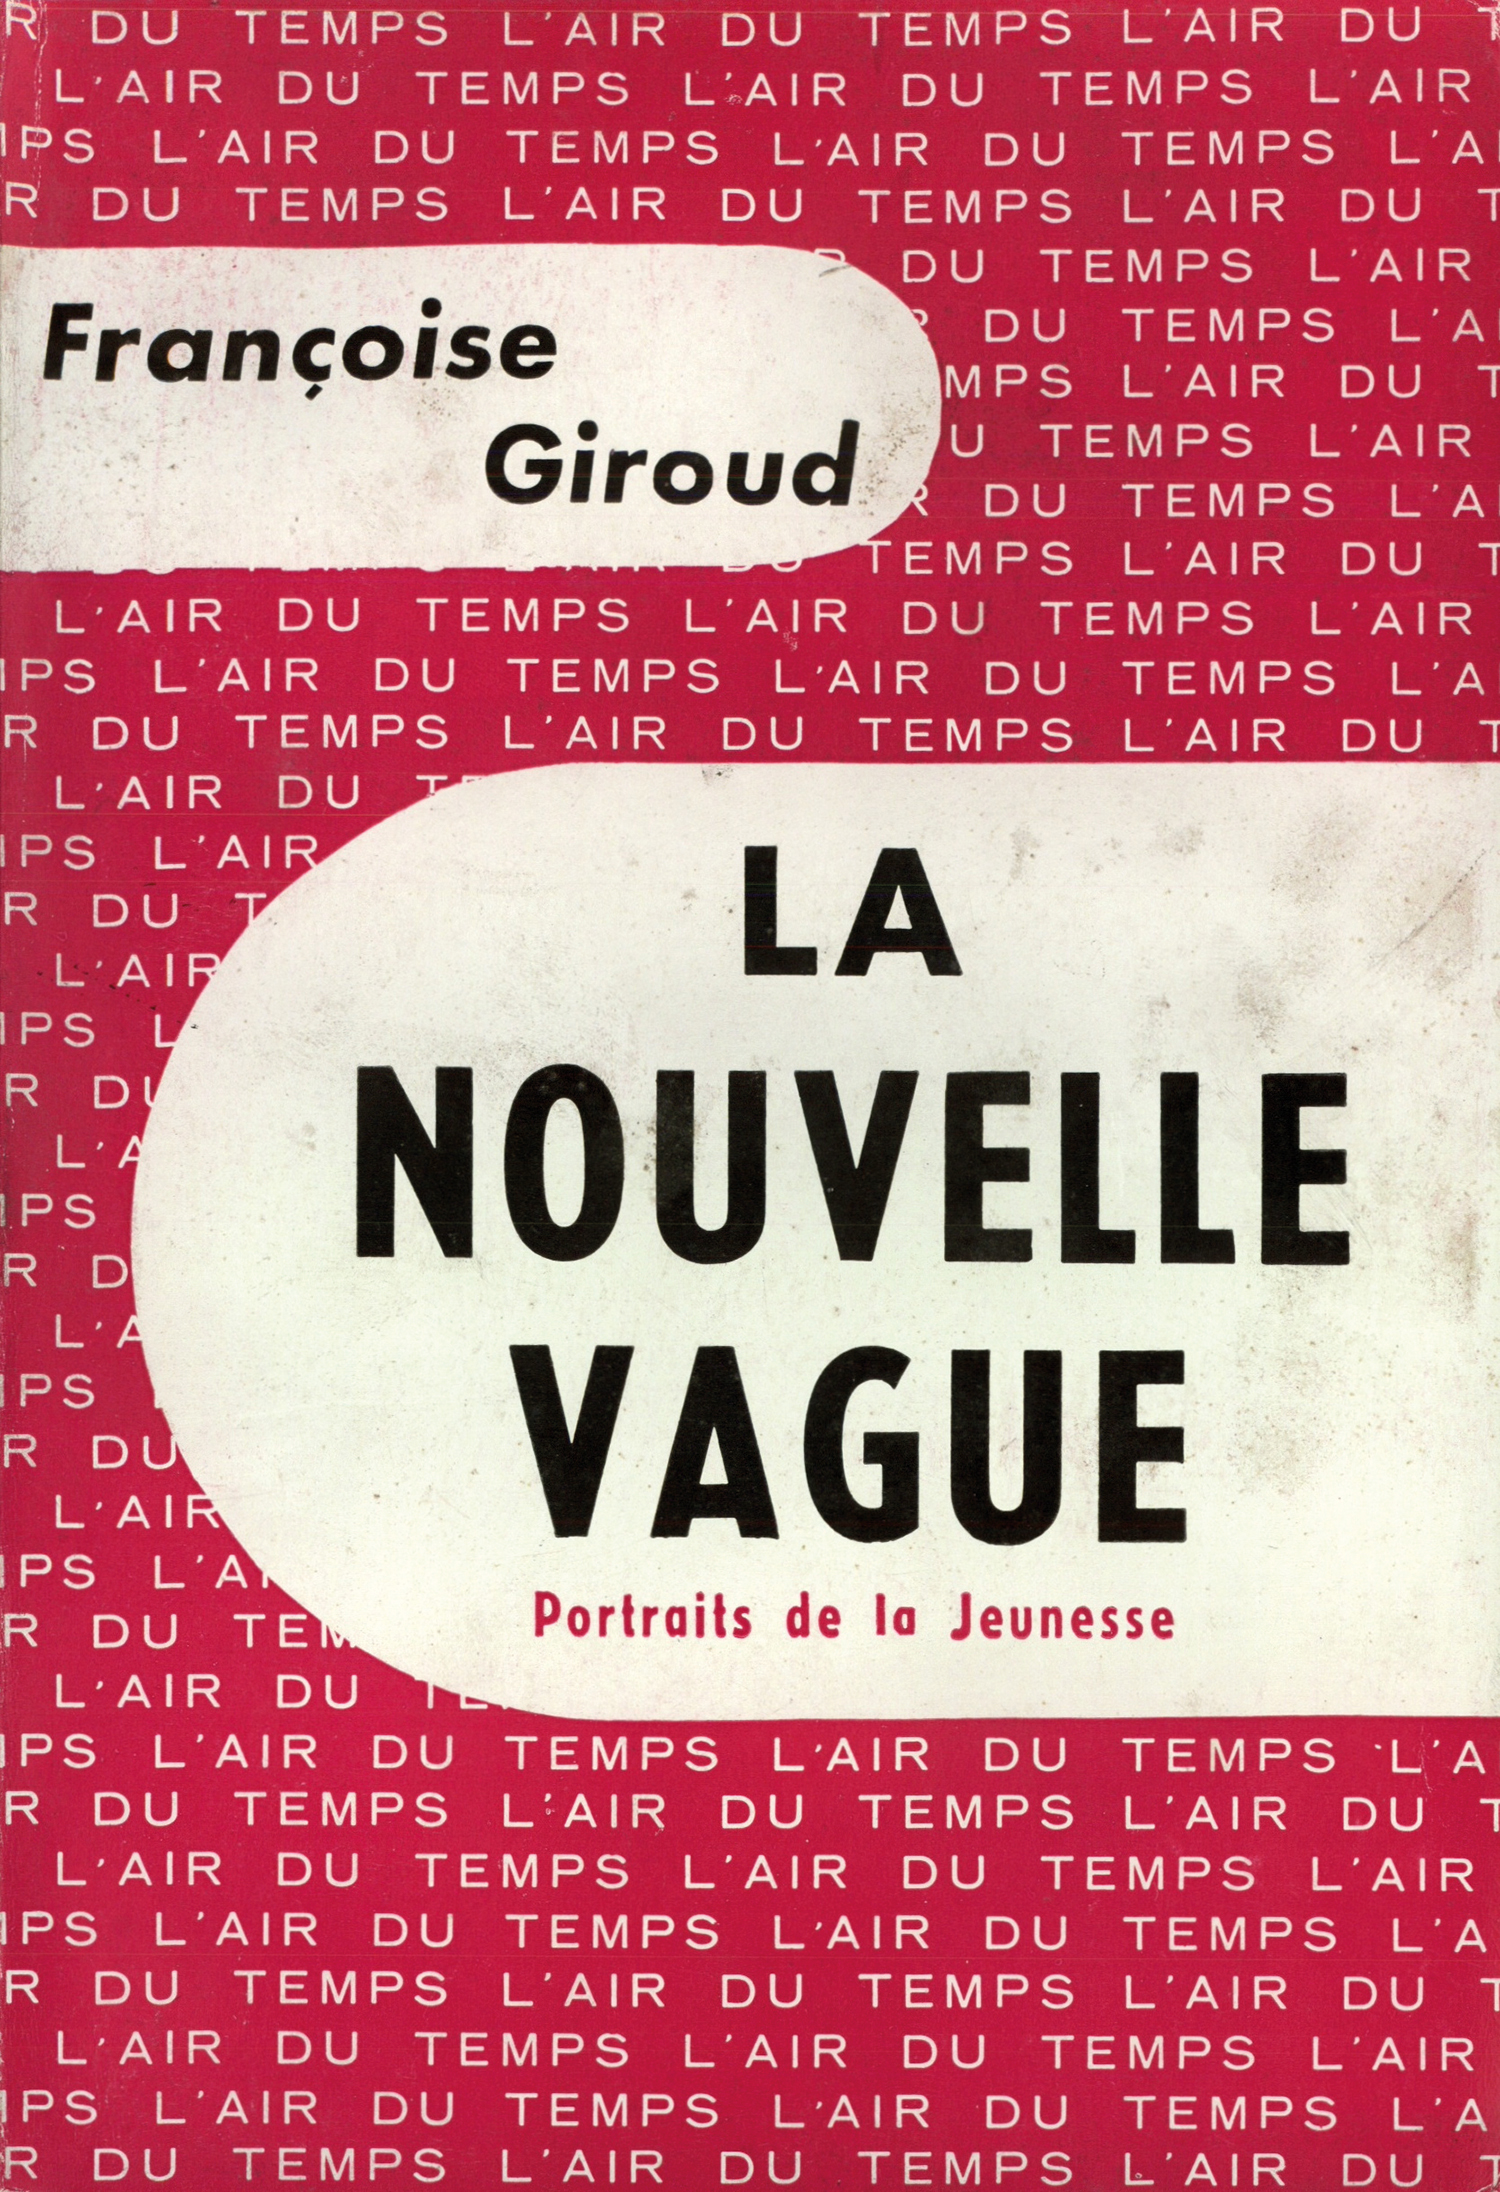 Françoise Giroud, "La nouvelle vague"